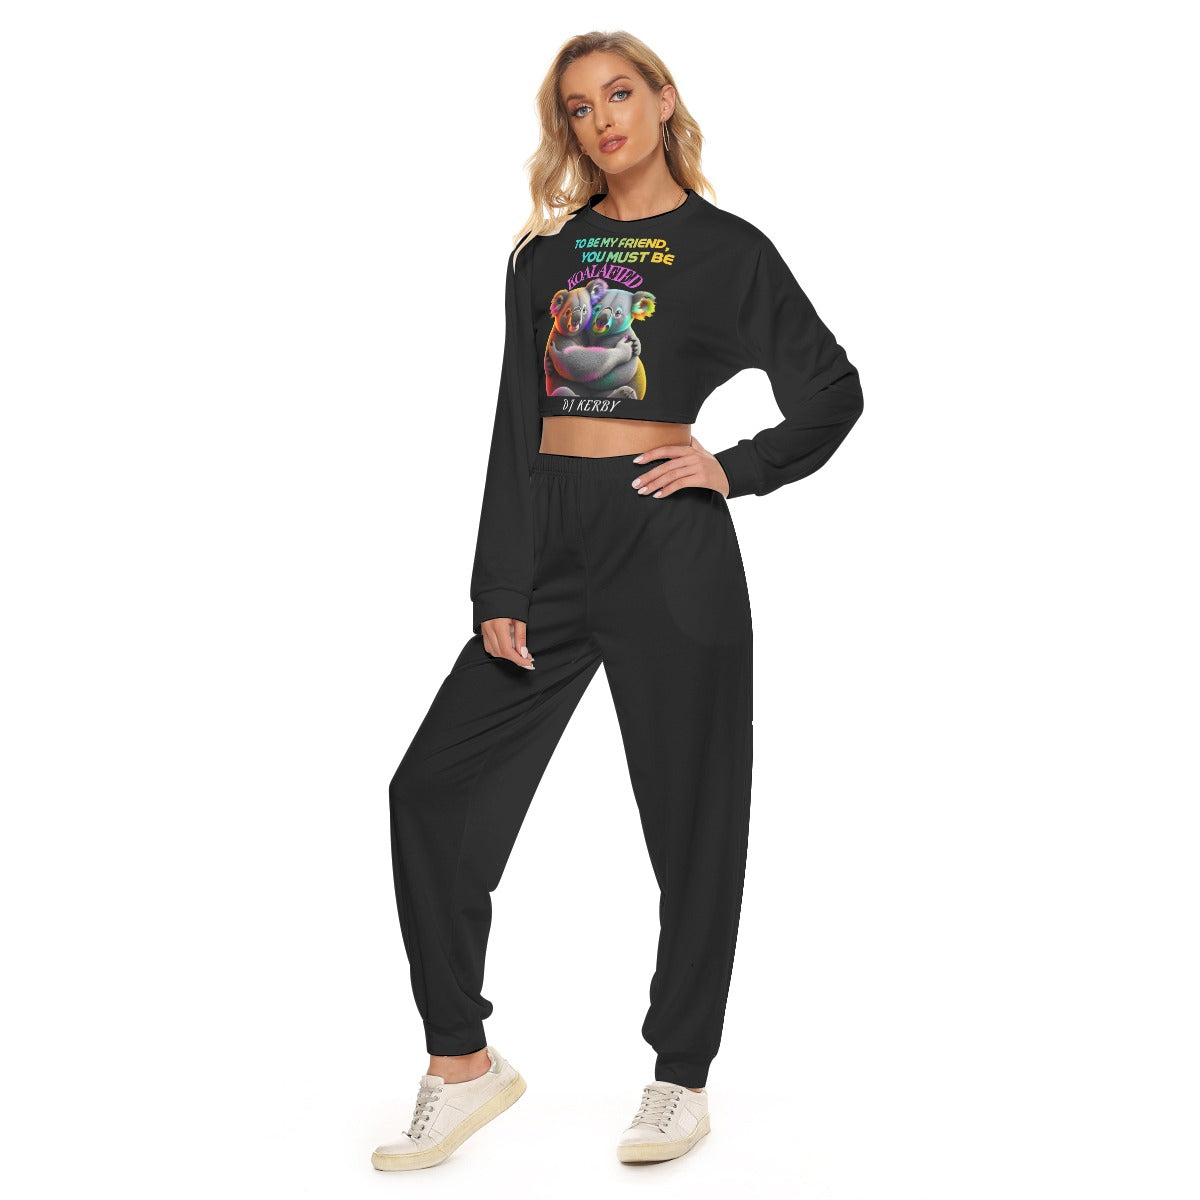 KERB DJ KERBY Koalified Women's Crop Sweatshirt Suit